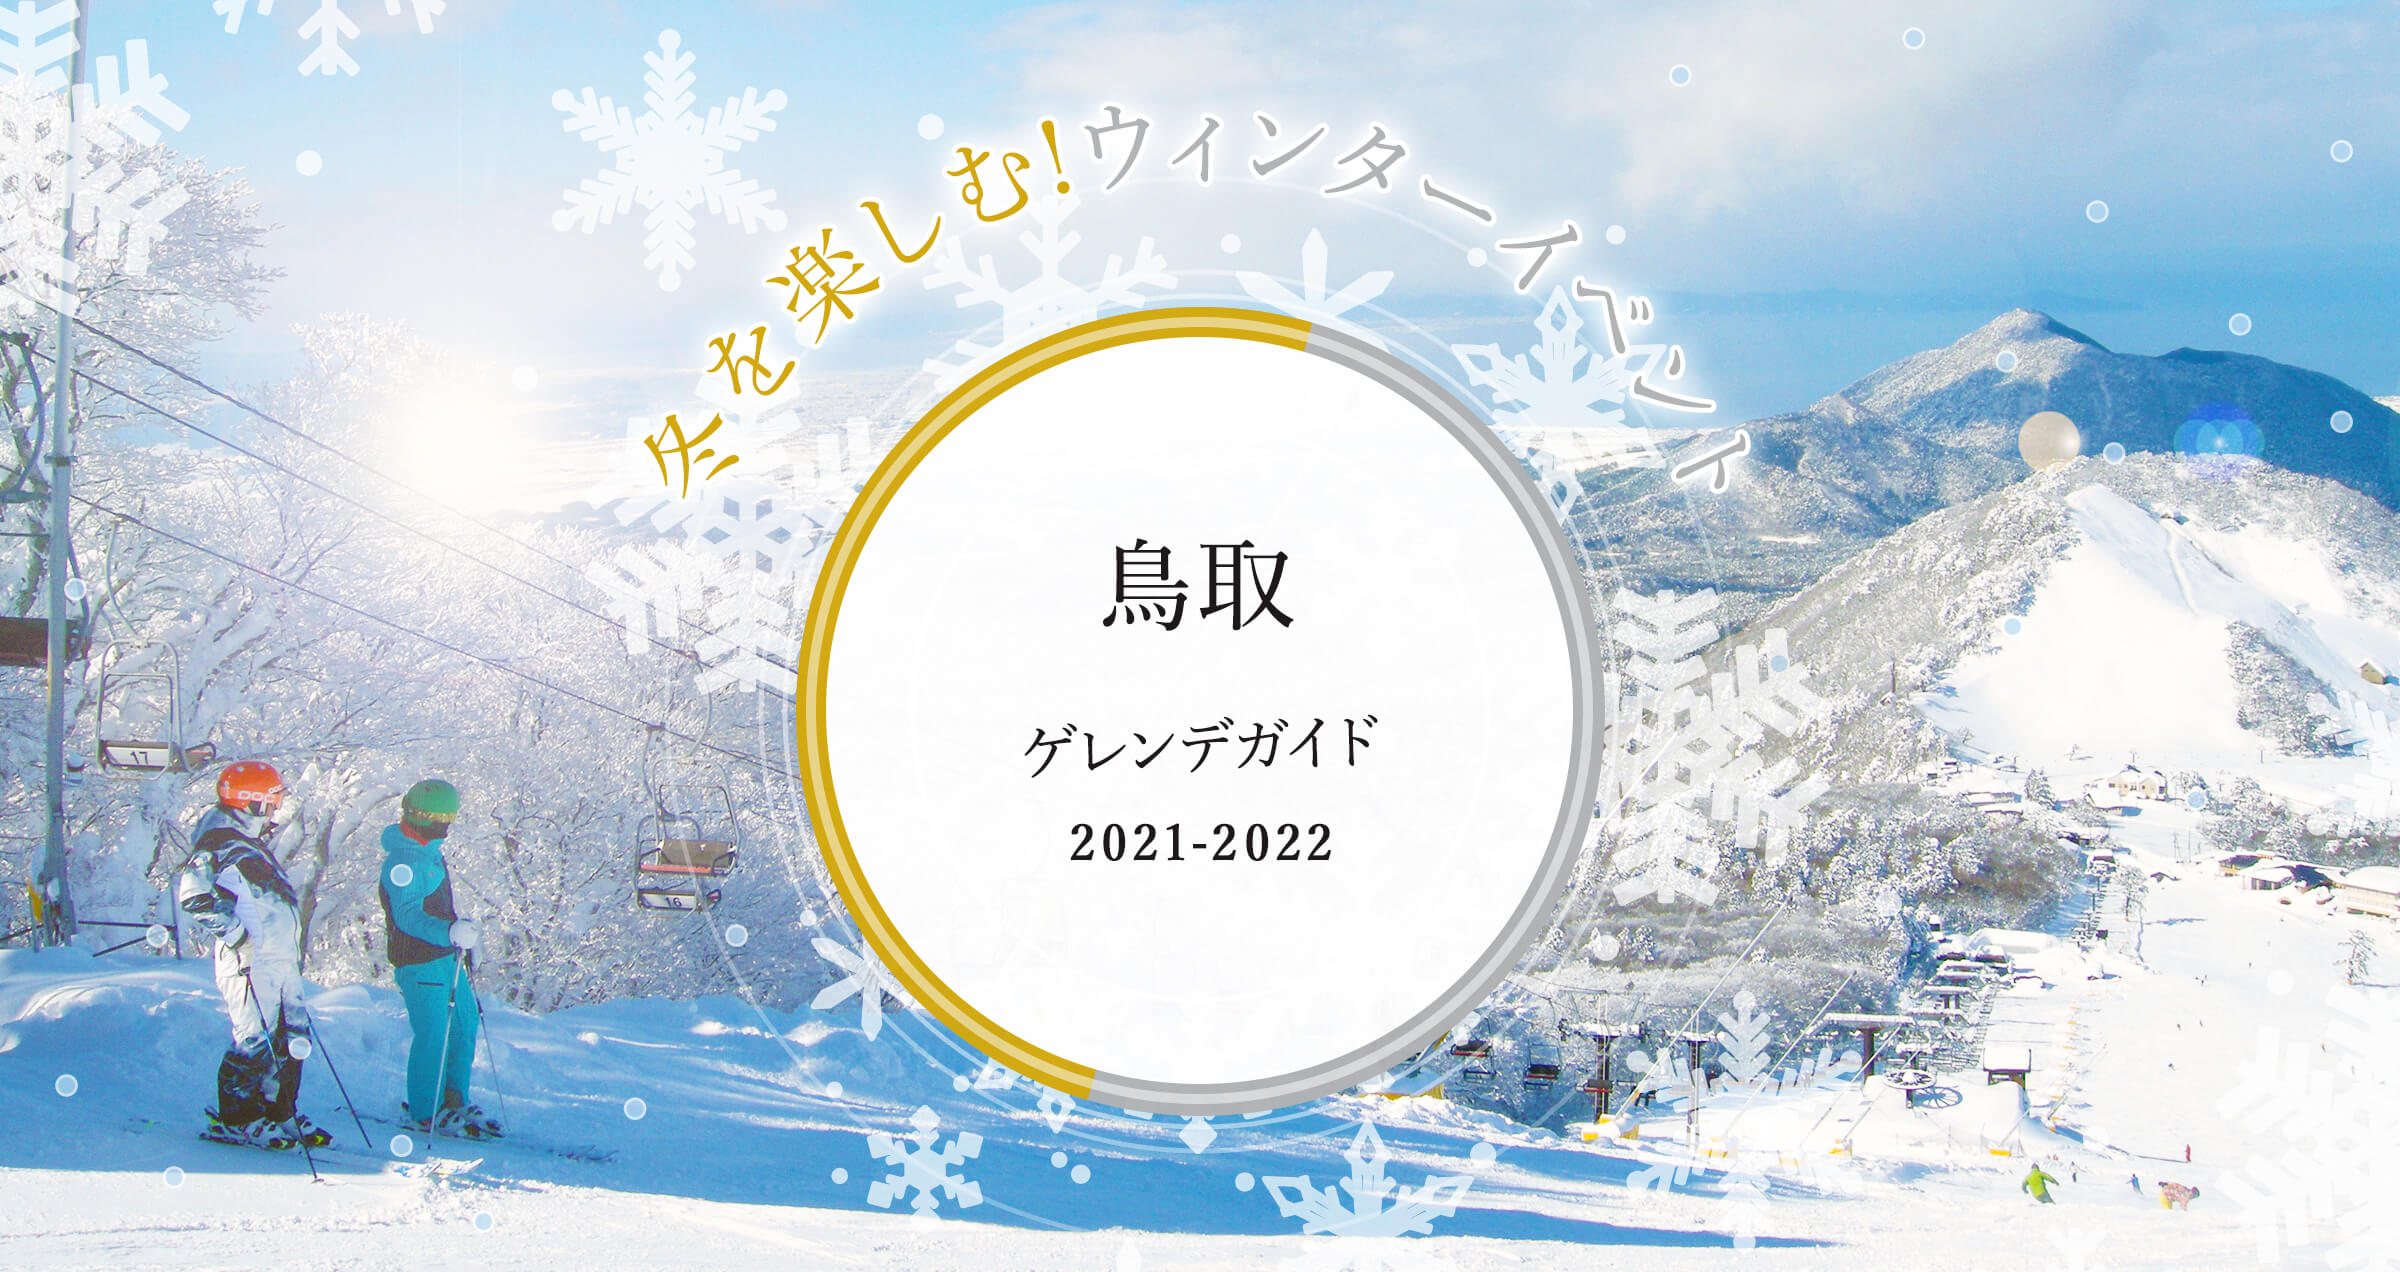 鳥取 イルミネーション & ゲレンデ ガイド 2021 冬を楽しむ!ウィンターイベント